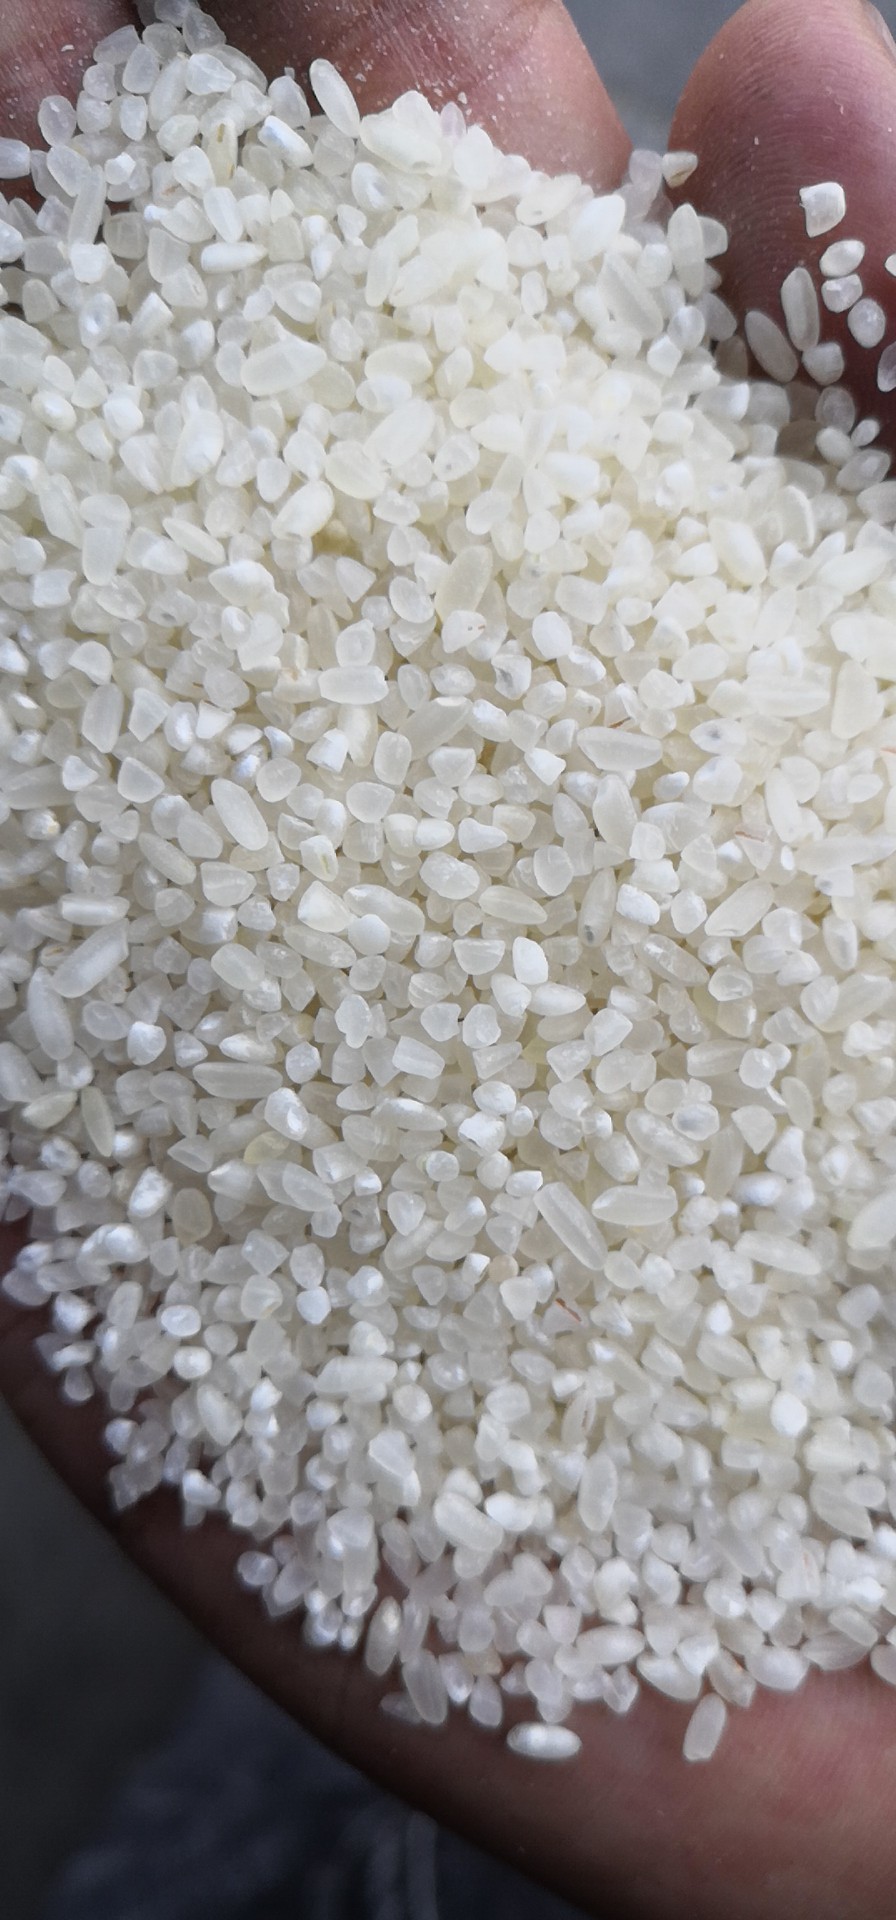 鱼台大米 批发大中小碎米价格 北京热销大米碎米价格